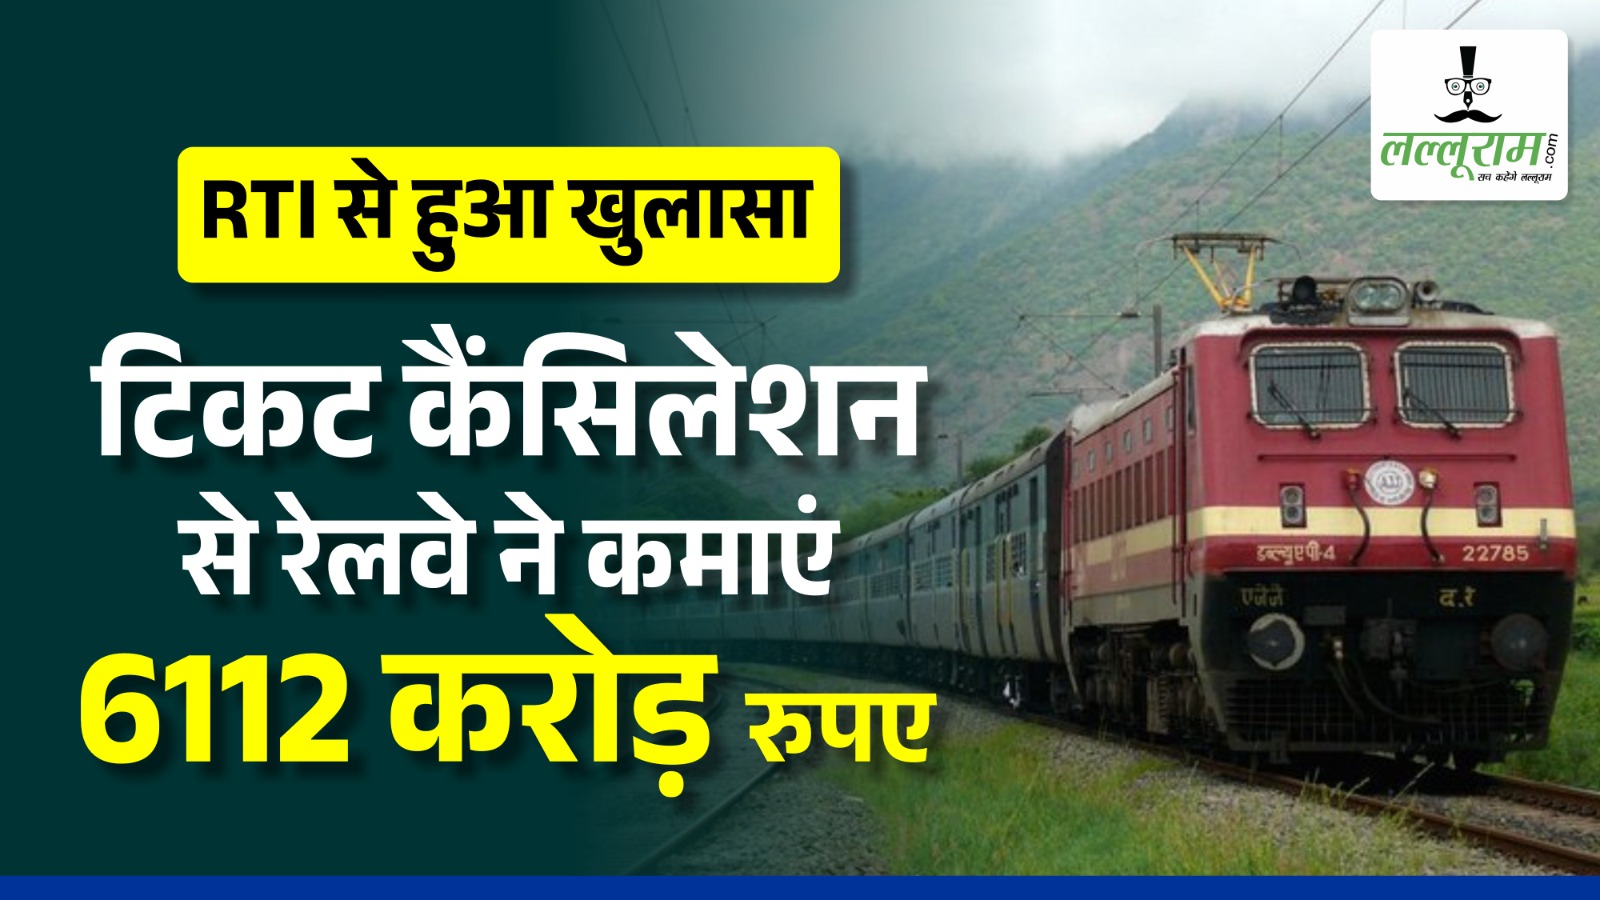 Exclusive: RTI से हुआ खुलासा टिकट कैंसिलेशन से रेलवे ने कमाएं 6112 करोड़ रुपए